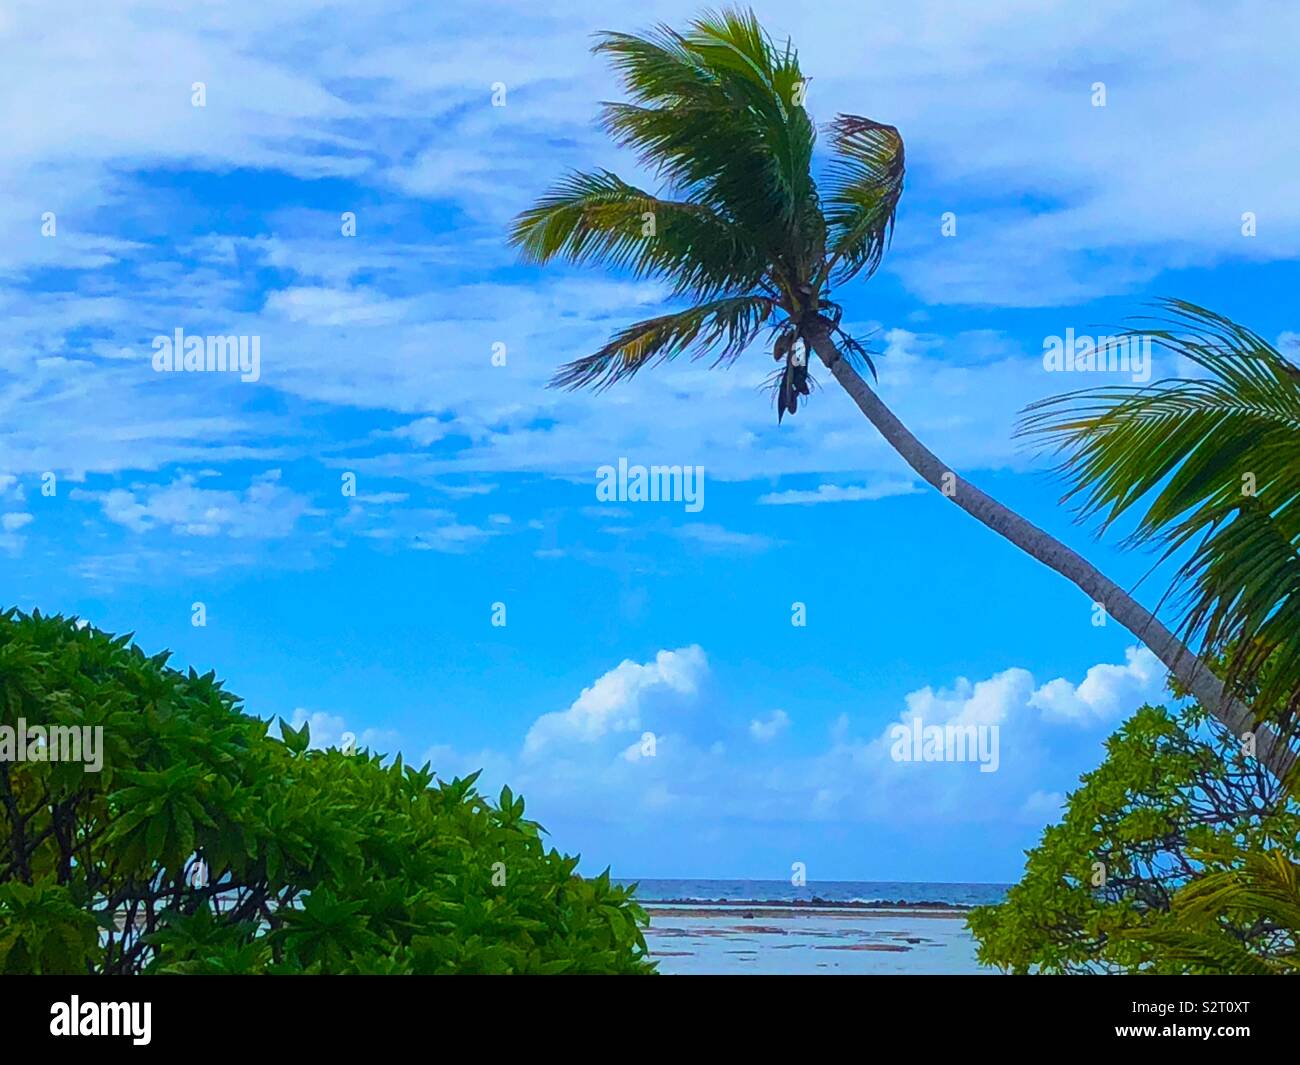 Un cocotier arbre sur un petit îlot du Pacifique Sud ou motu au Blue Lagoon, l'atoll de Rangiroa, Tuamotu Islands ( archipel des Tuamotu), Polynésie française. Banque D'Images